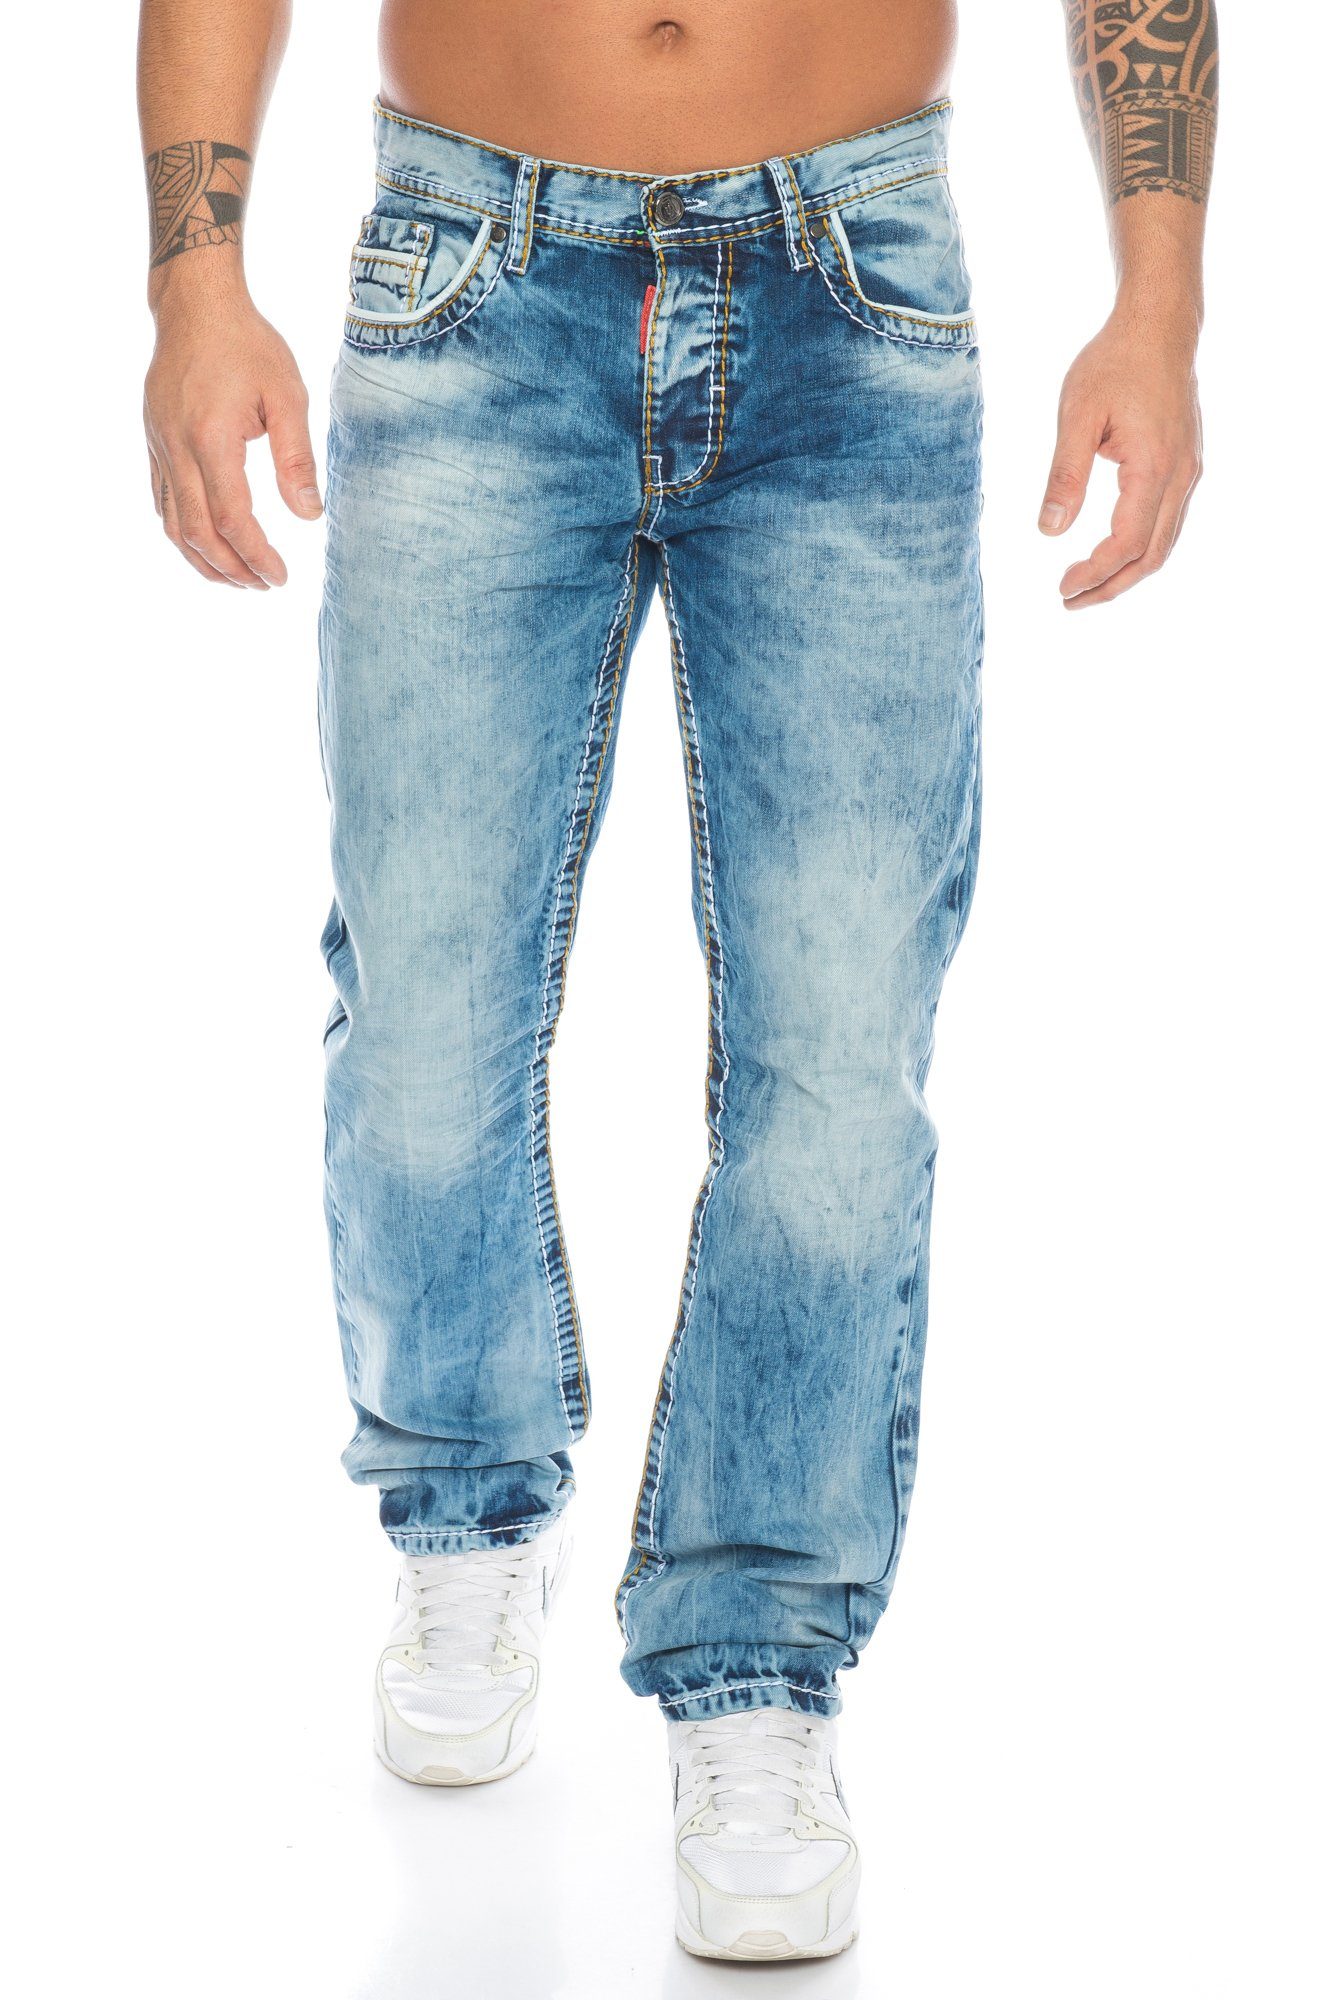 Cipo & Baxx Herren im kleine ausgefallenem Verschiedene Kontrastnahtdesign dicke vorne Akzente, Stoff Regular-fit-Jeans Hose und Labelpatch Branding Kontrastnähte mit Jeans und